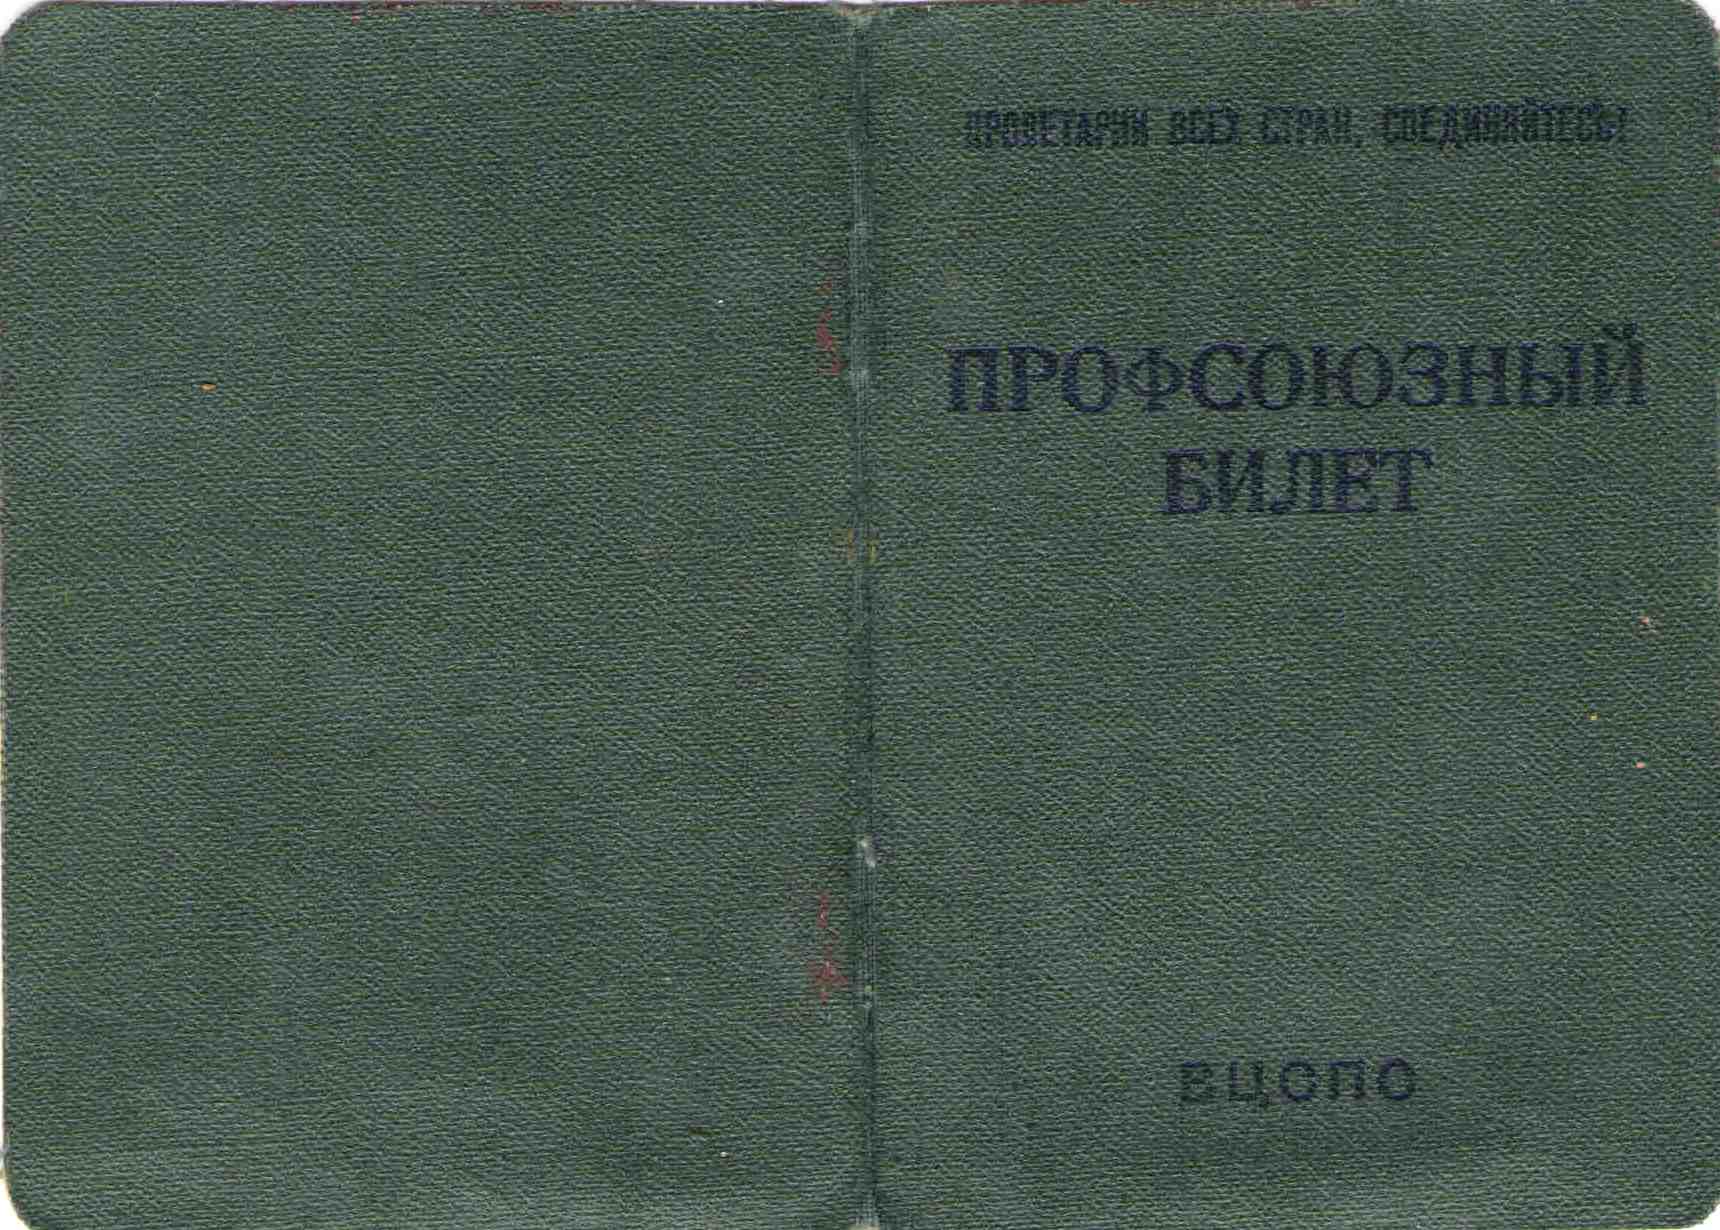 55. Профсоюзный билет, Барыкин ПП, 1969